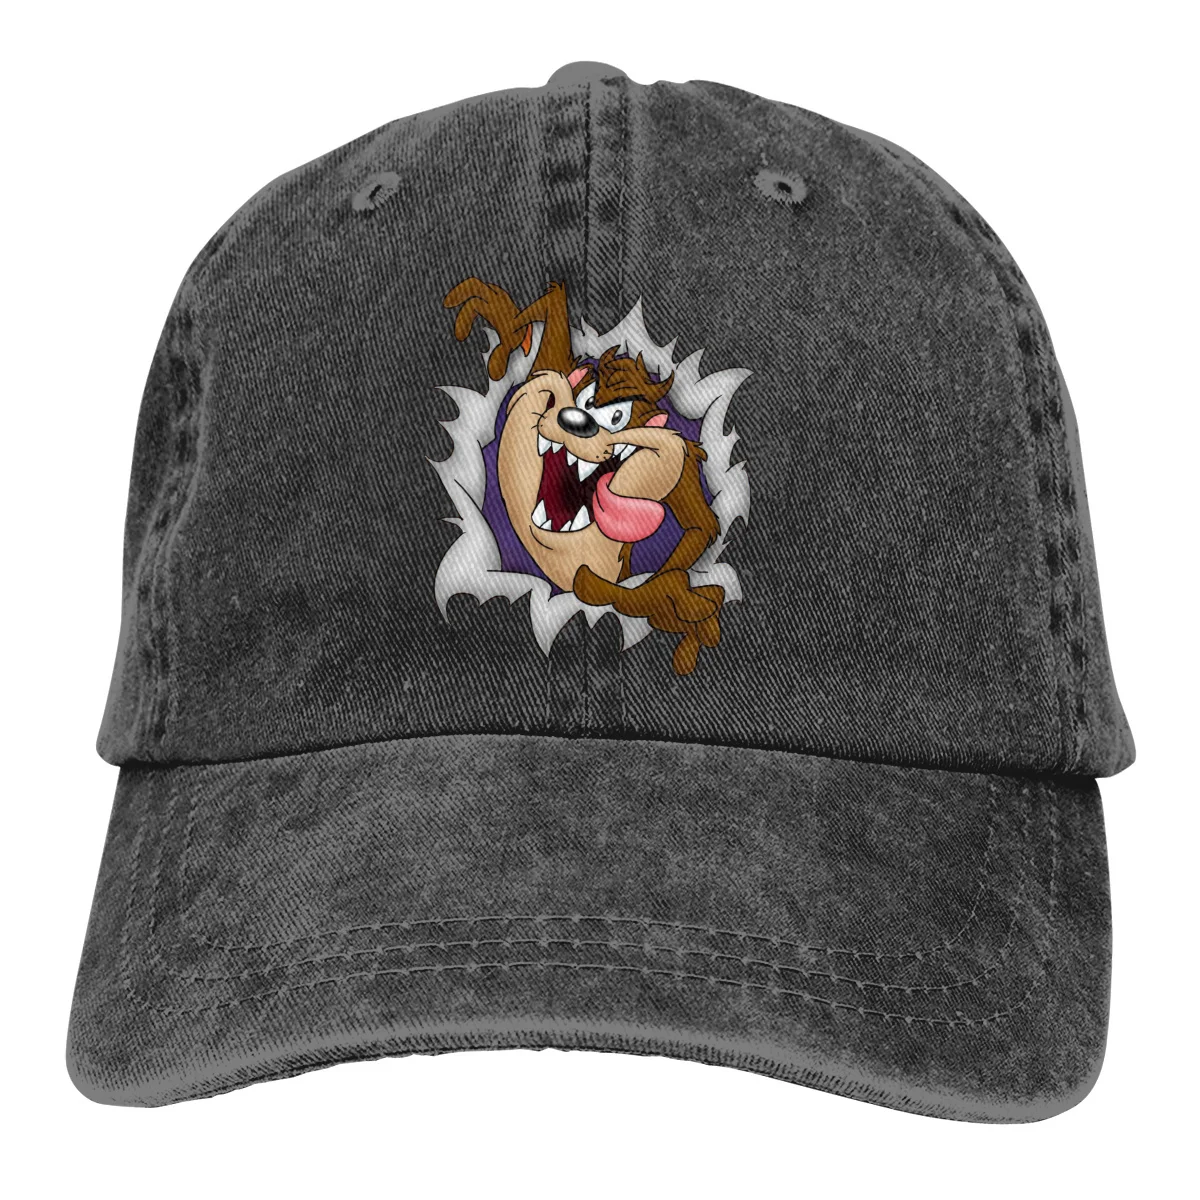 Washed Baseball Cap Tasmanian Devil By Calamitykangaroo Wild Hat Adjustable Men And Women Outdoor Sun Hats Trucker Caps  - buy with discount